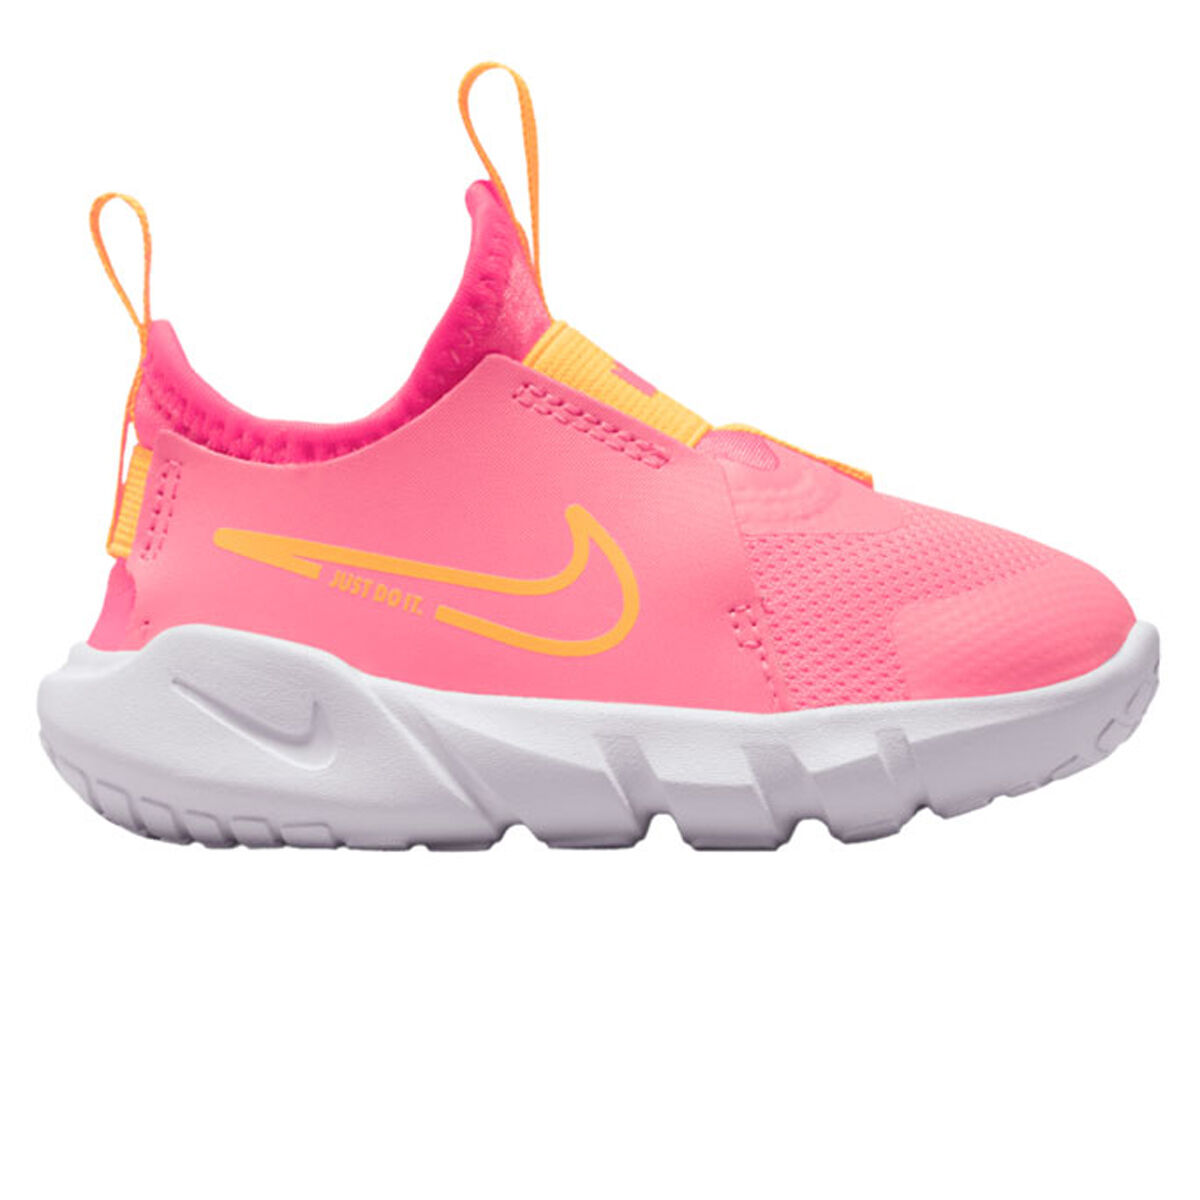 Nike Dart 9 Wide Running Shoes - Women